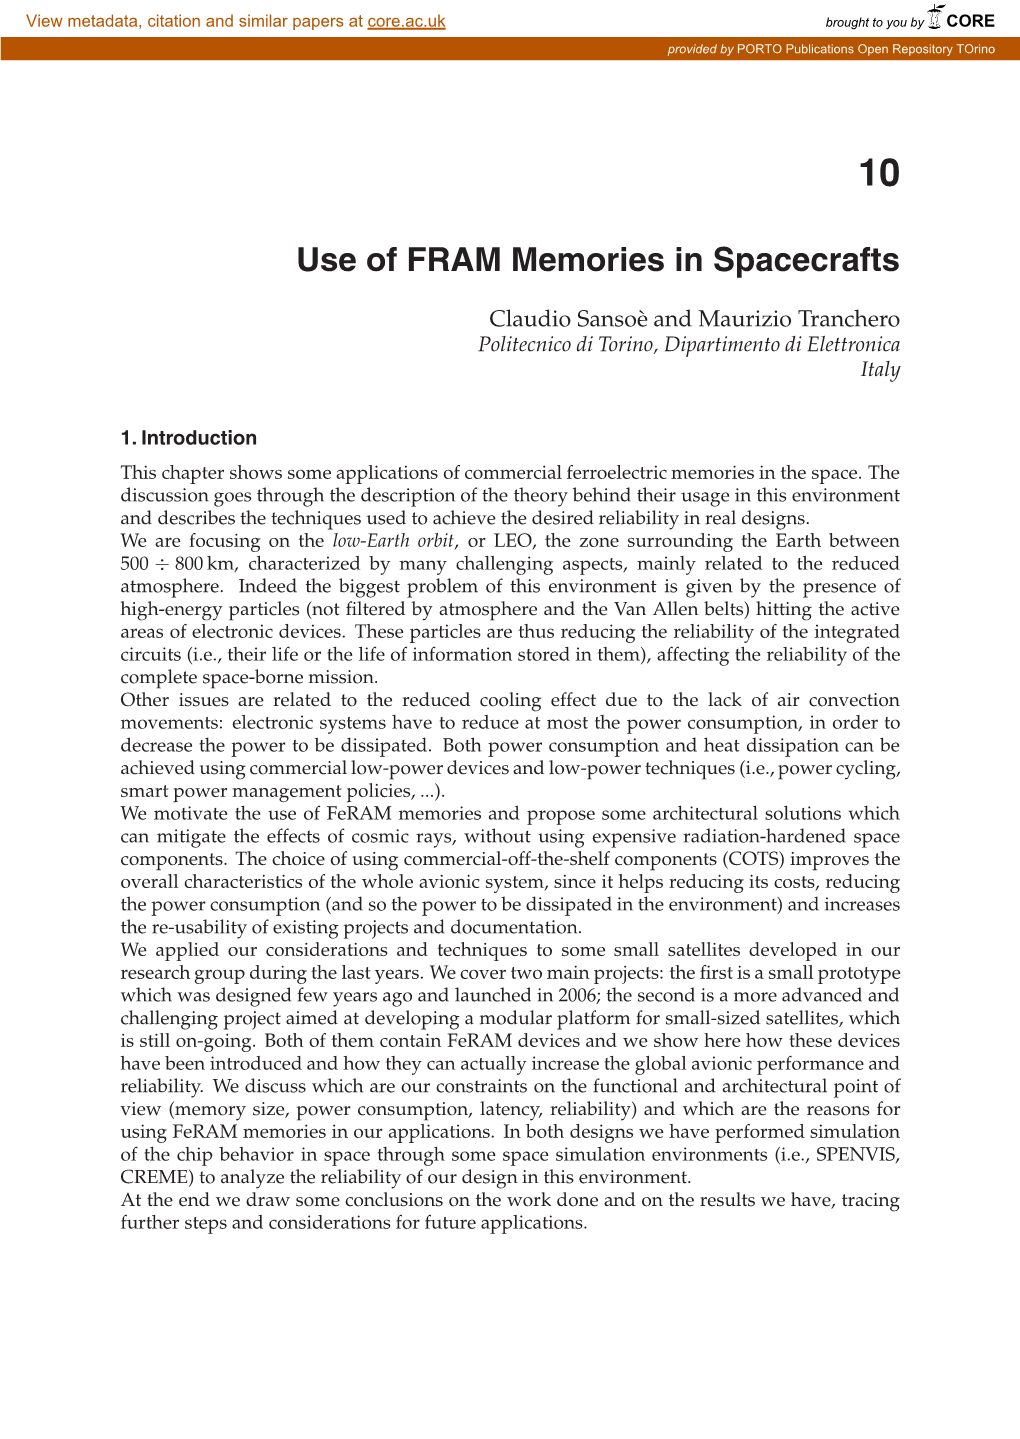 Use of FRAM Memories in Spacecrafts